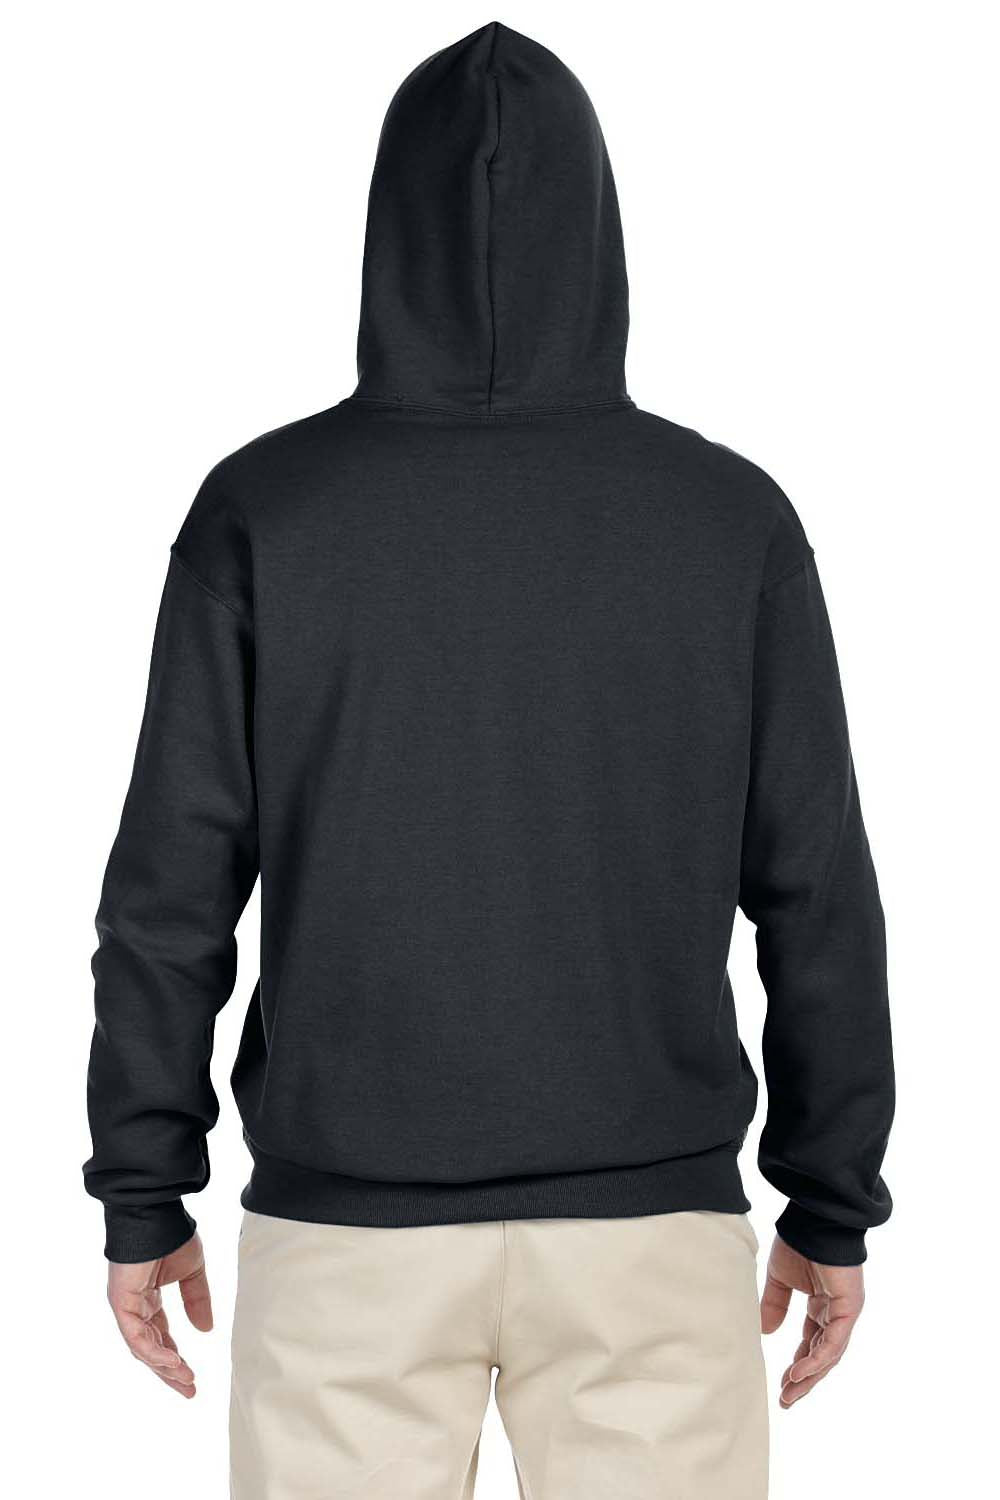 Jerzees 996 Mens NuBlend Fleece Hooded Sweatshirt Hoodie Charcoal Grey Back